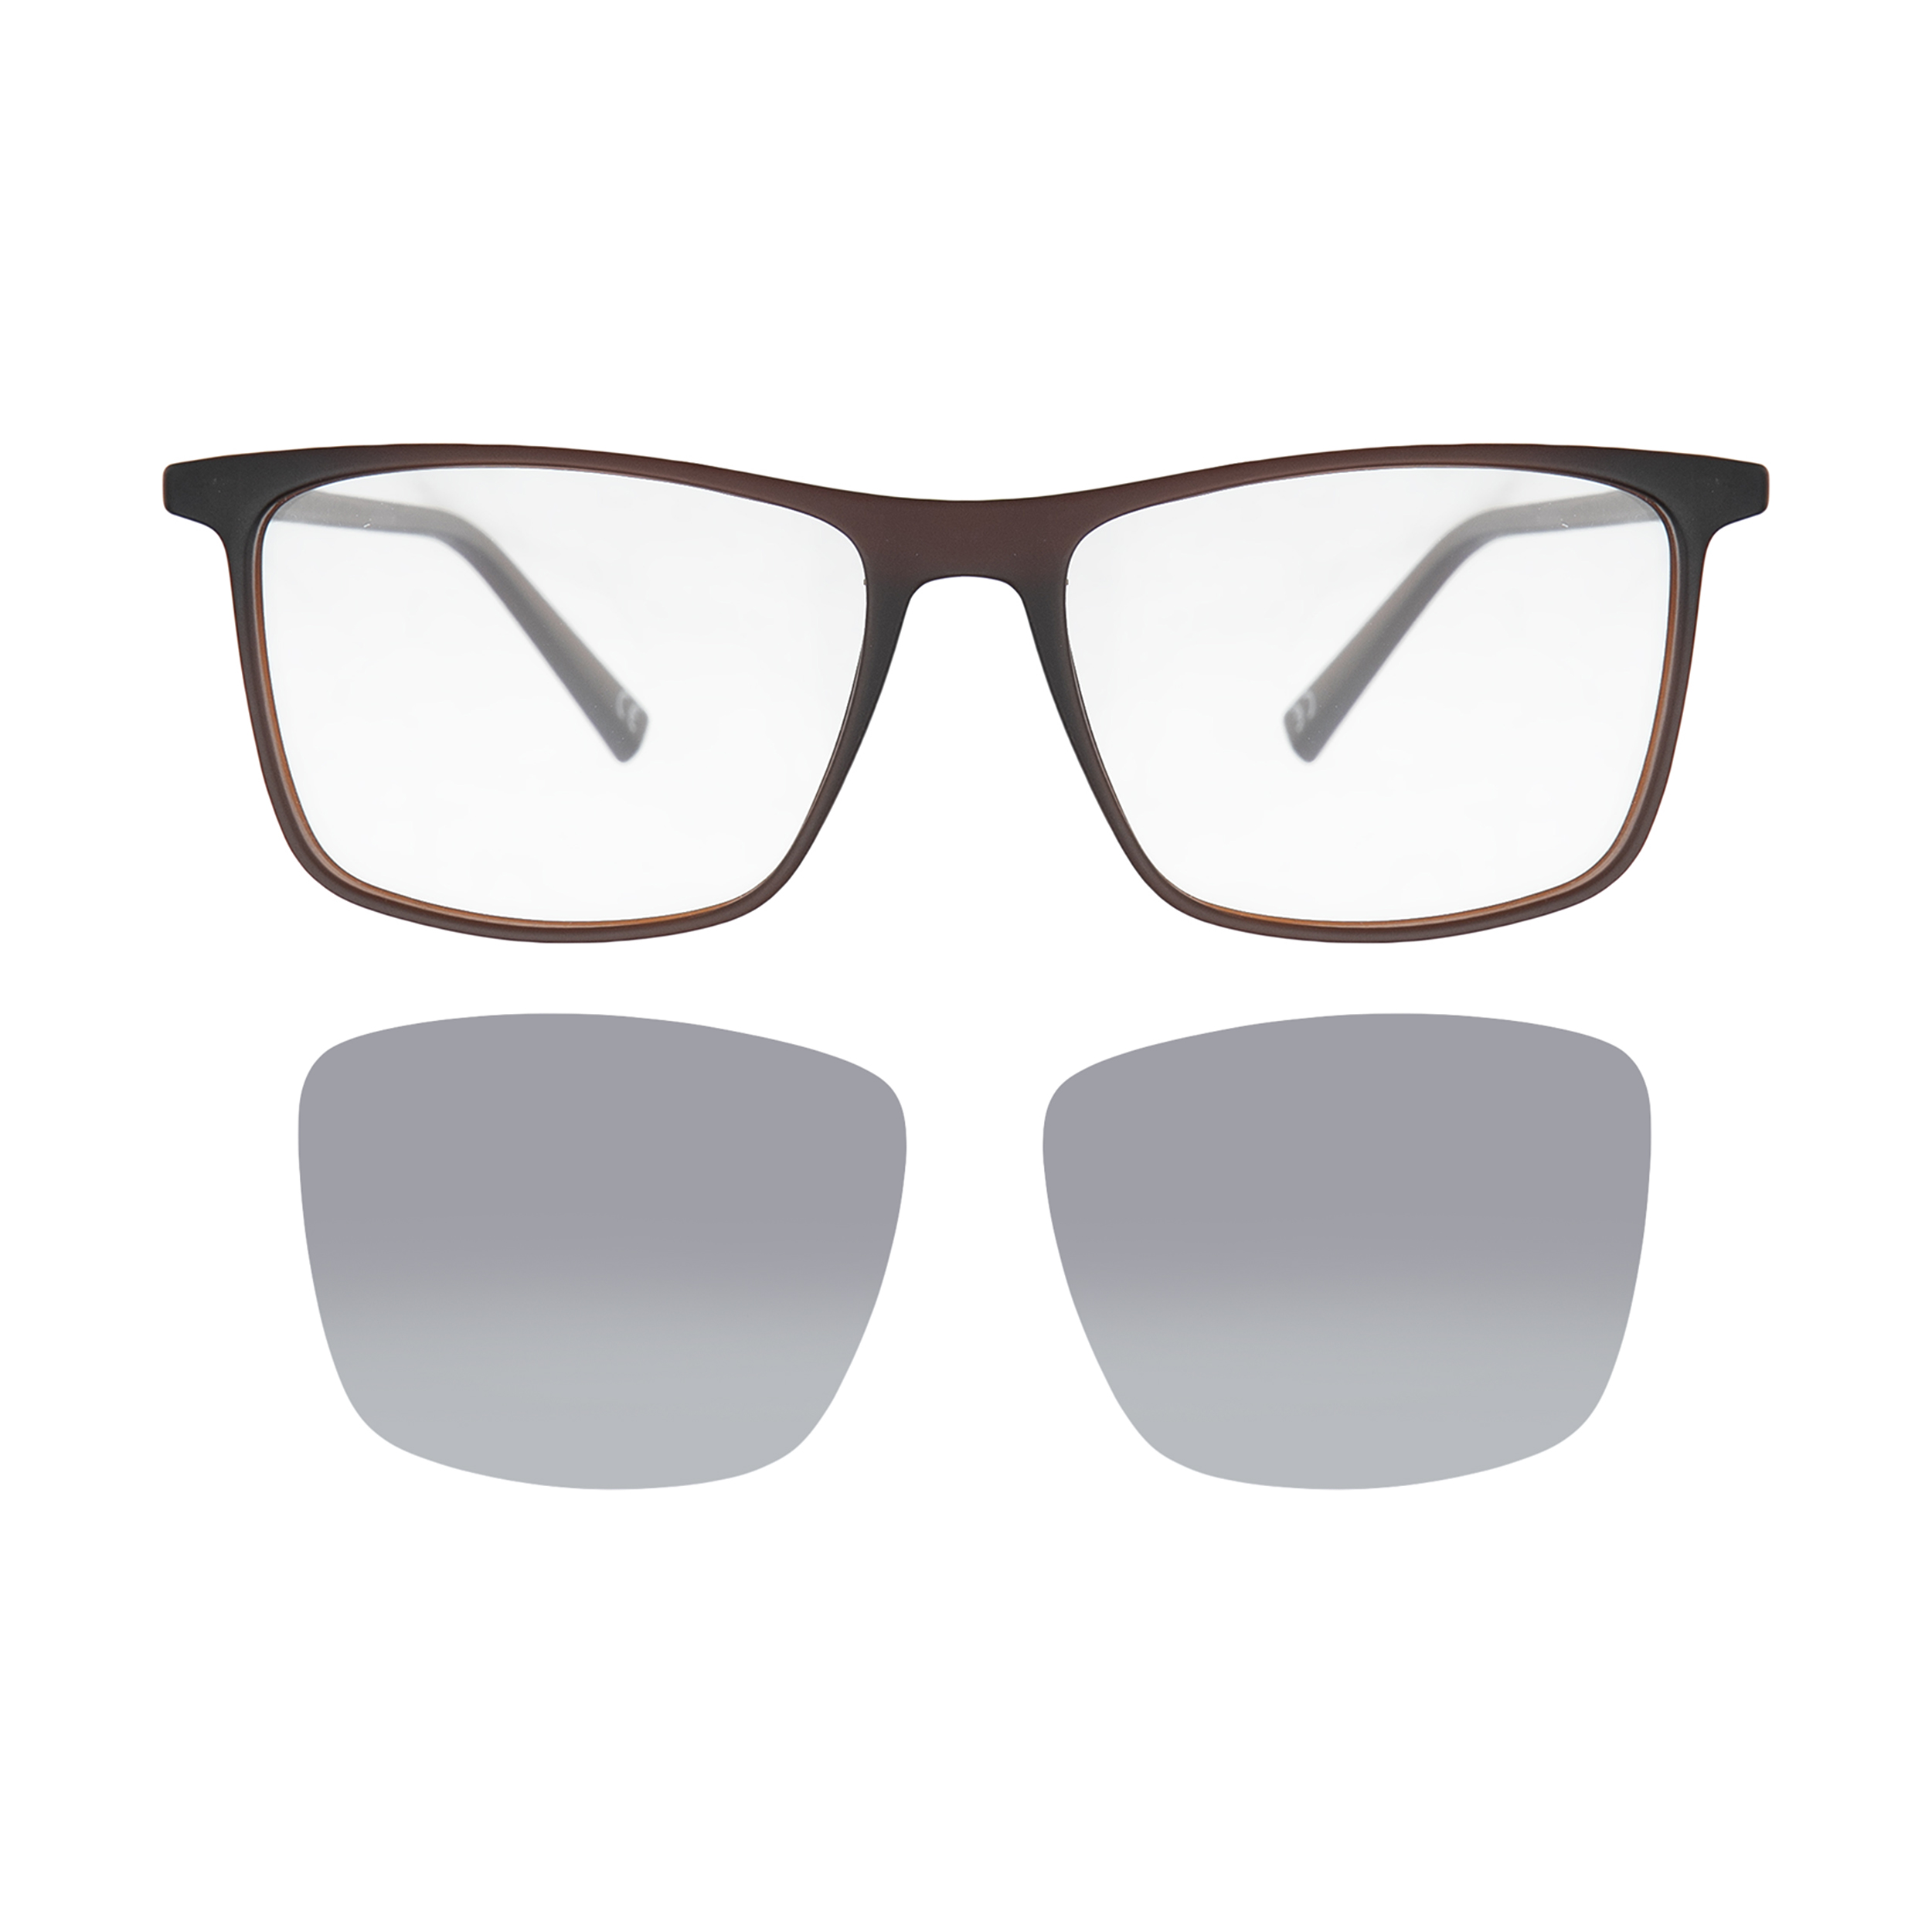 فریم عینک طبی مردانه لوناتو مدل mv70165 c04 به همراه کاور عینک آفتابی